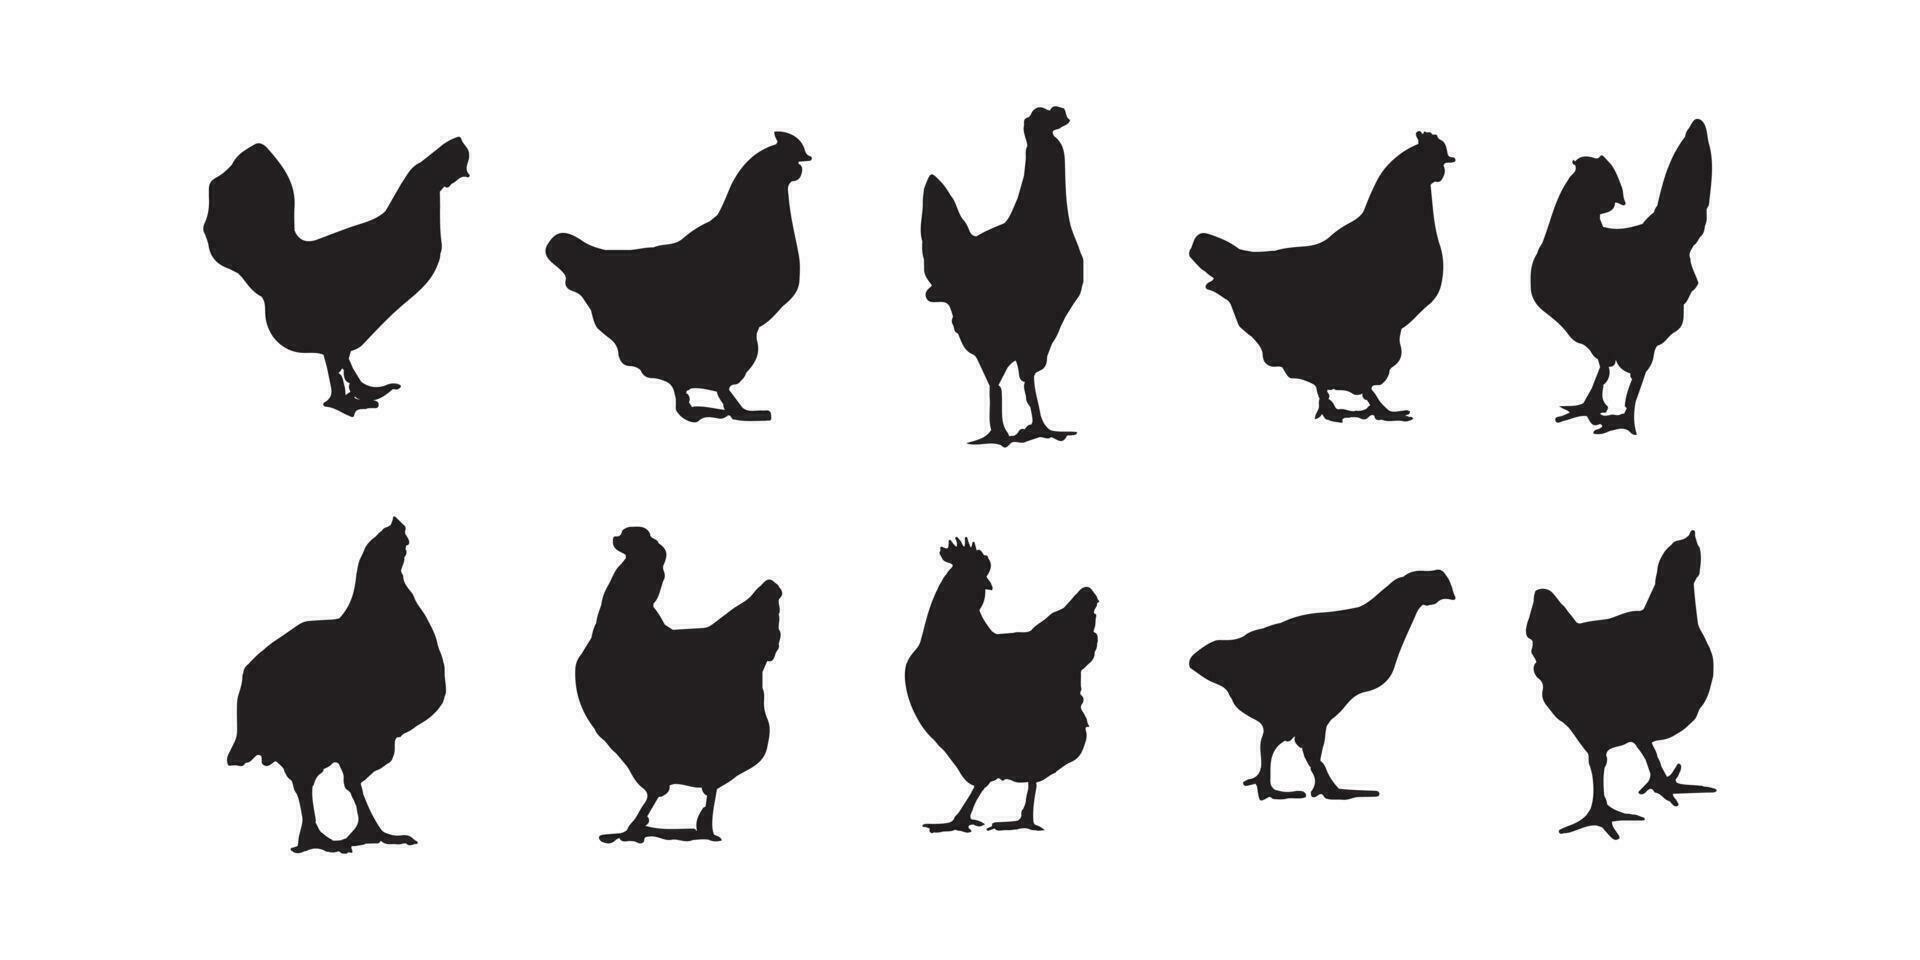 gallina, parrilla, pollo siluetas vector ilustrador eps10